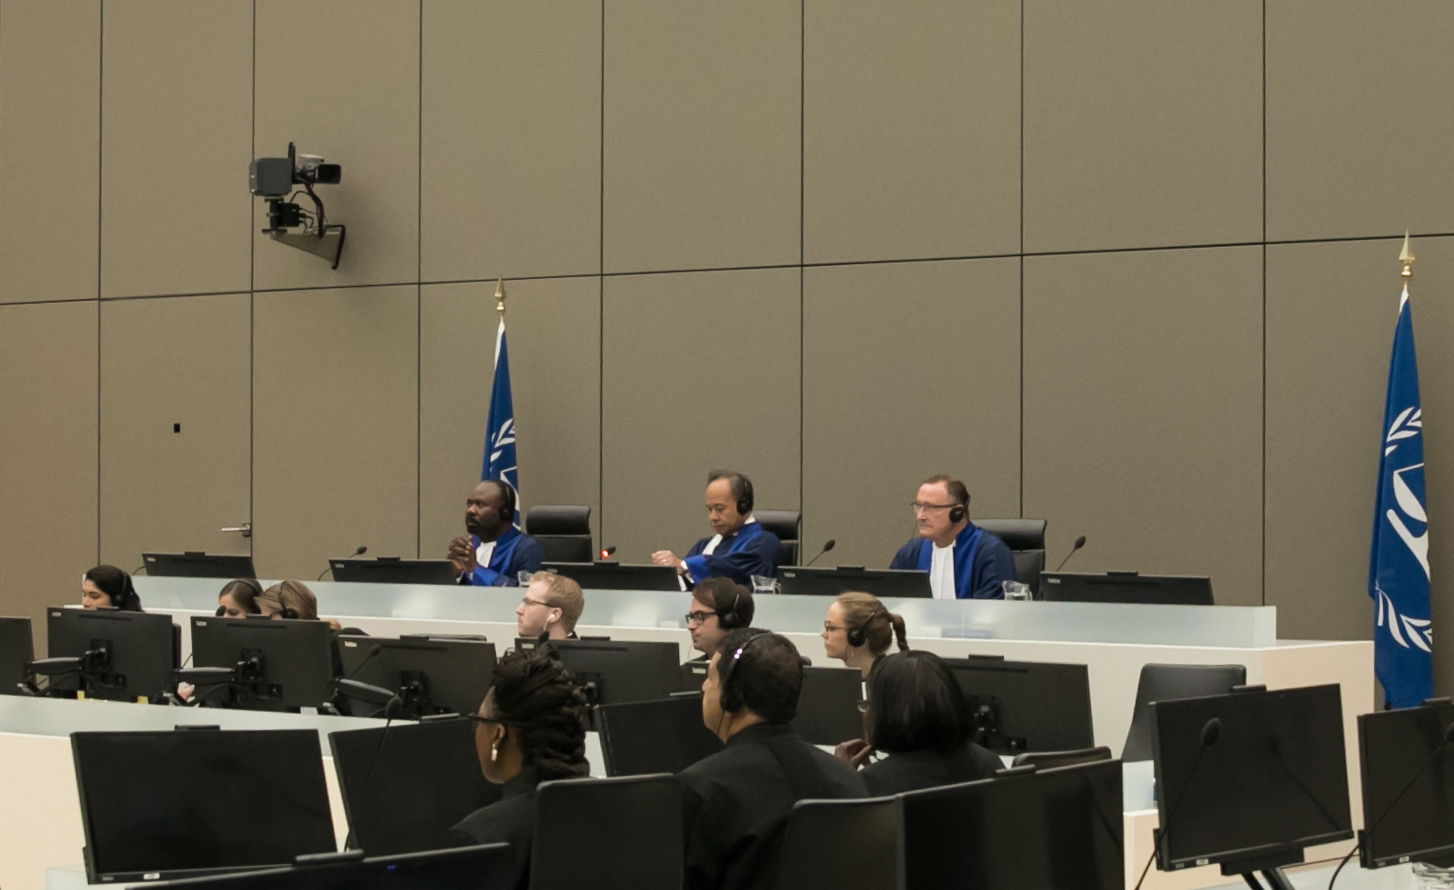 قضاة الدائرة الابتدائية الثامنة في أثناء الجلسة التي عُقِدت بتاريخ 17 آب/أغسطس 2017 في مقر المحكمة الجنائية الدولية في لاهاي بهولندا. ©ICC-CPI